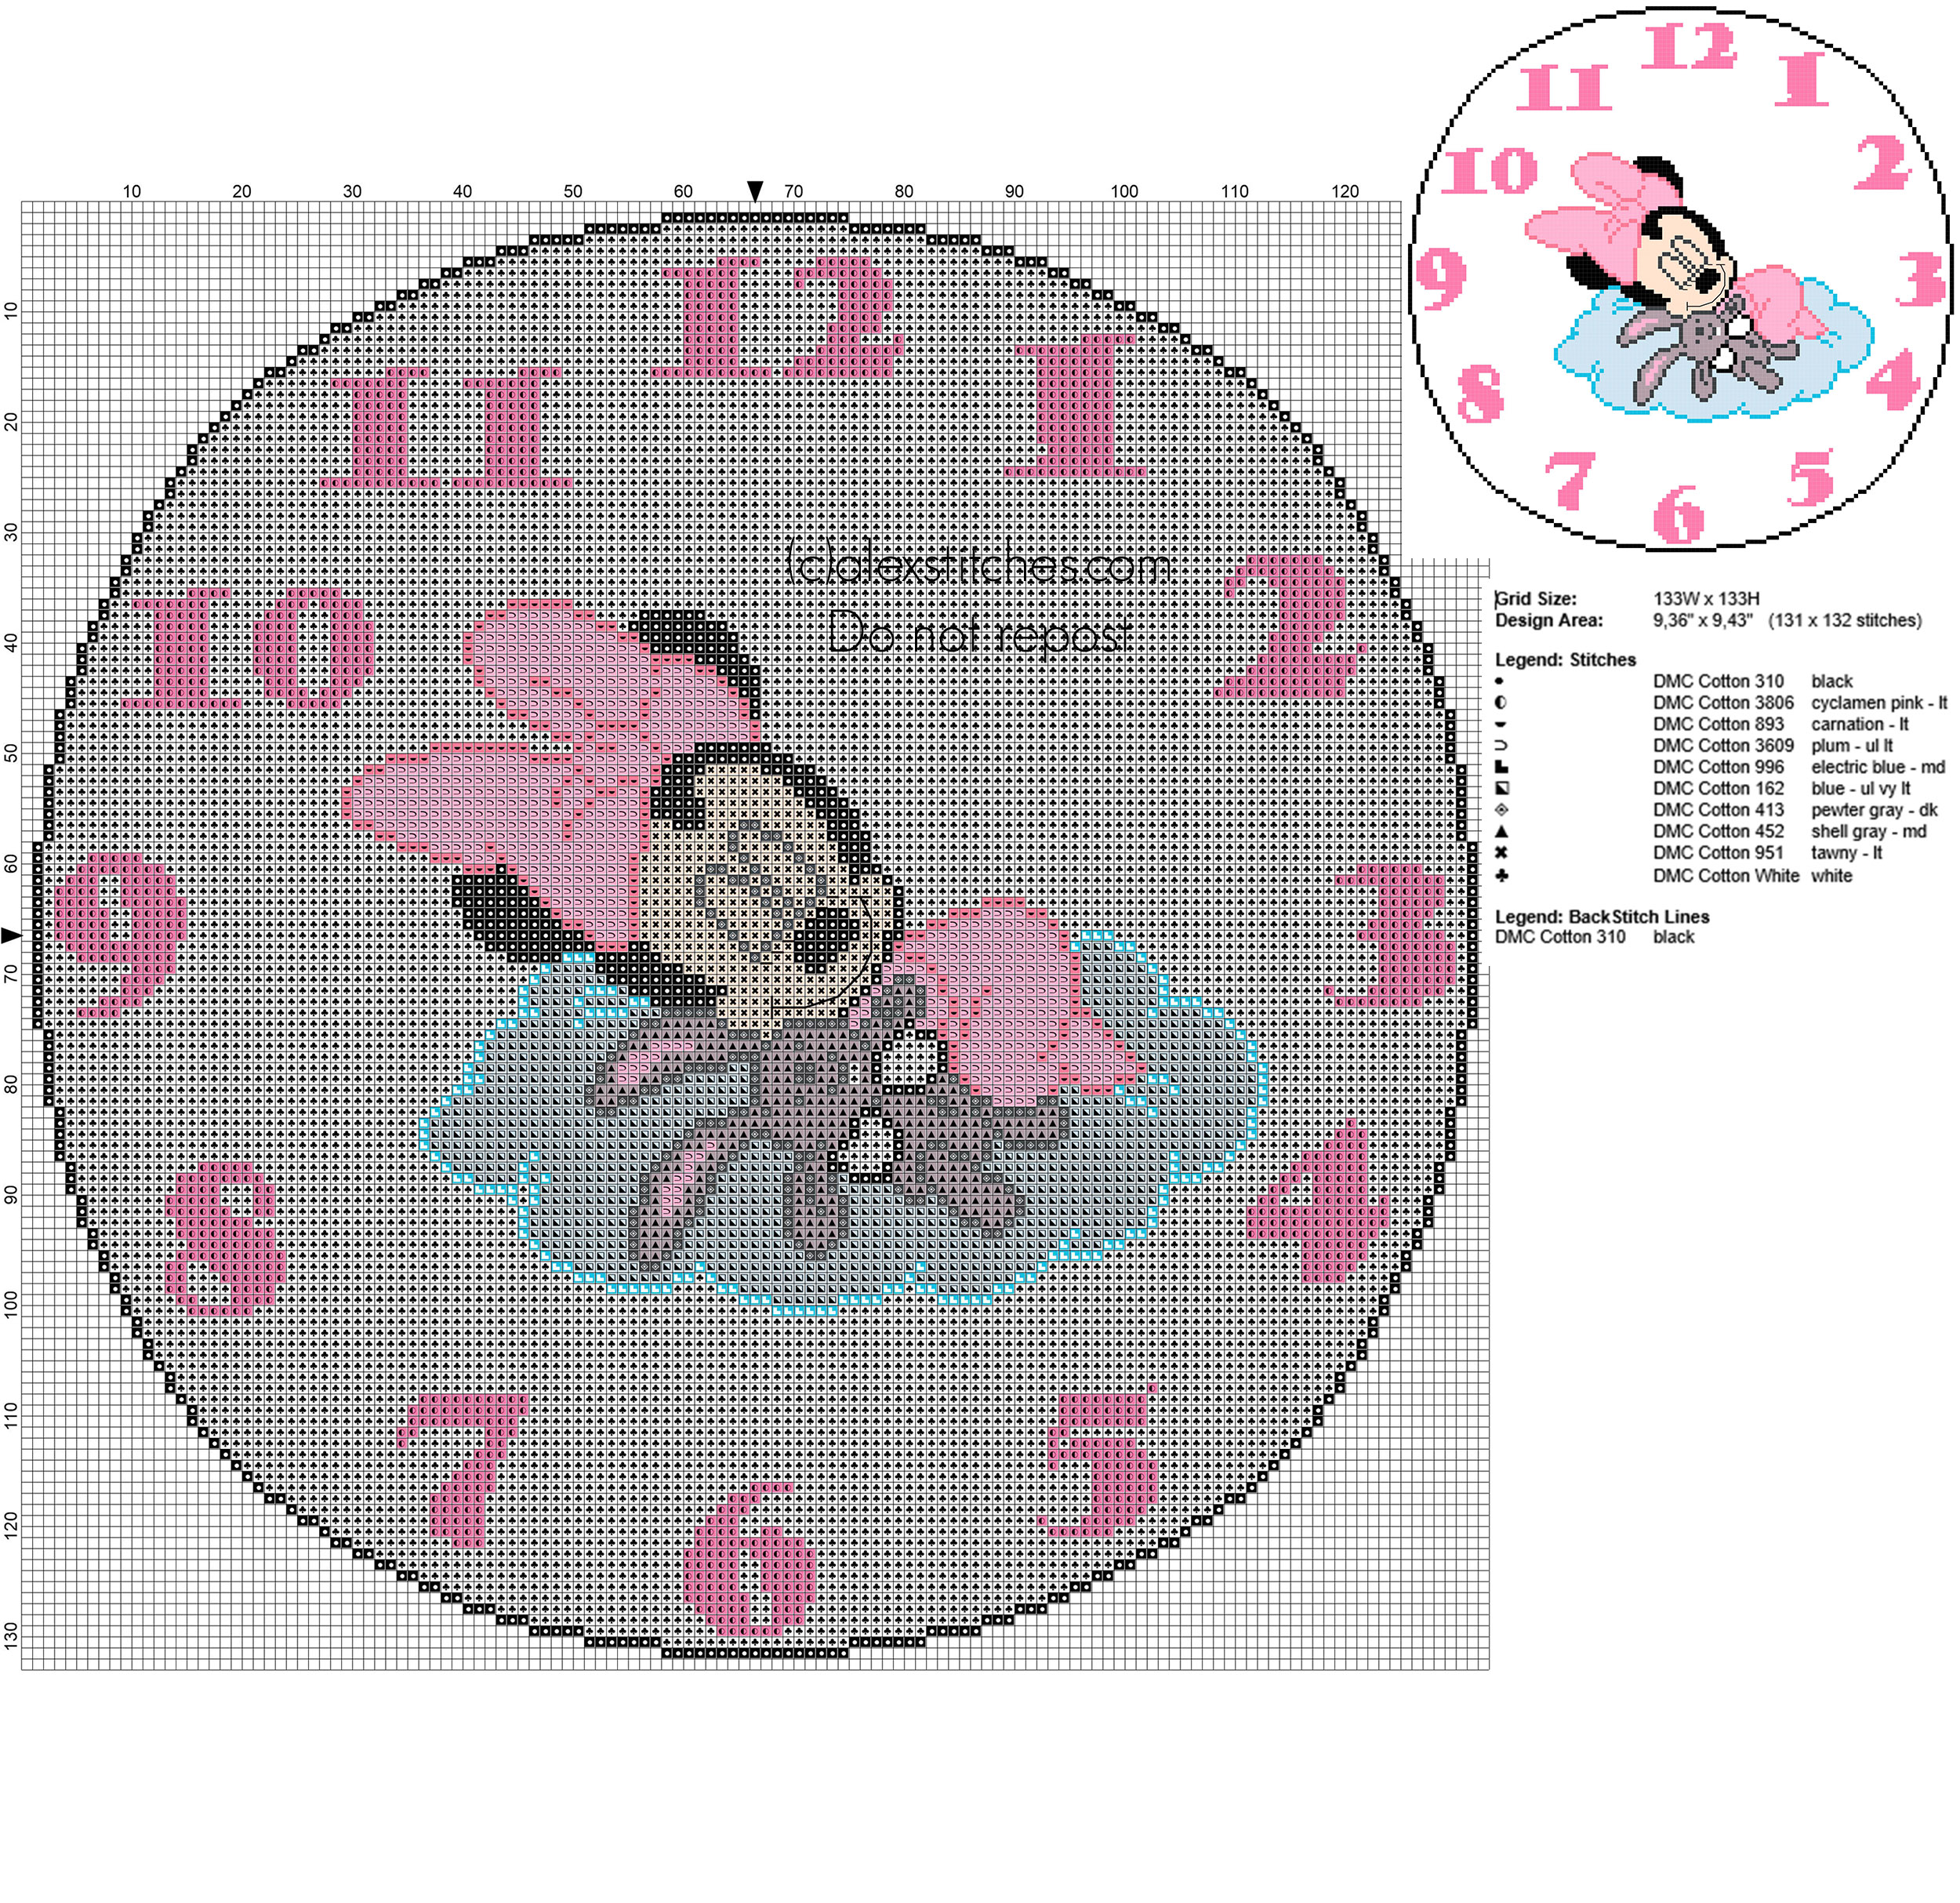 Cross stitch clock with Disney Minnie with teddy bear 130 stitches diameter